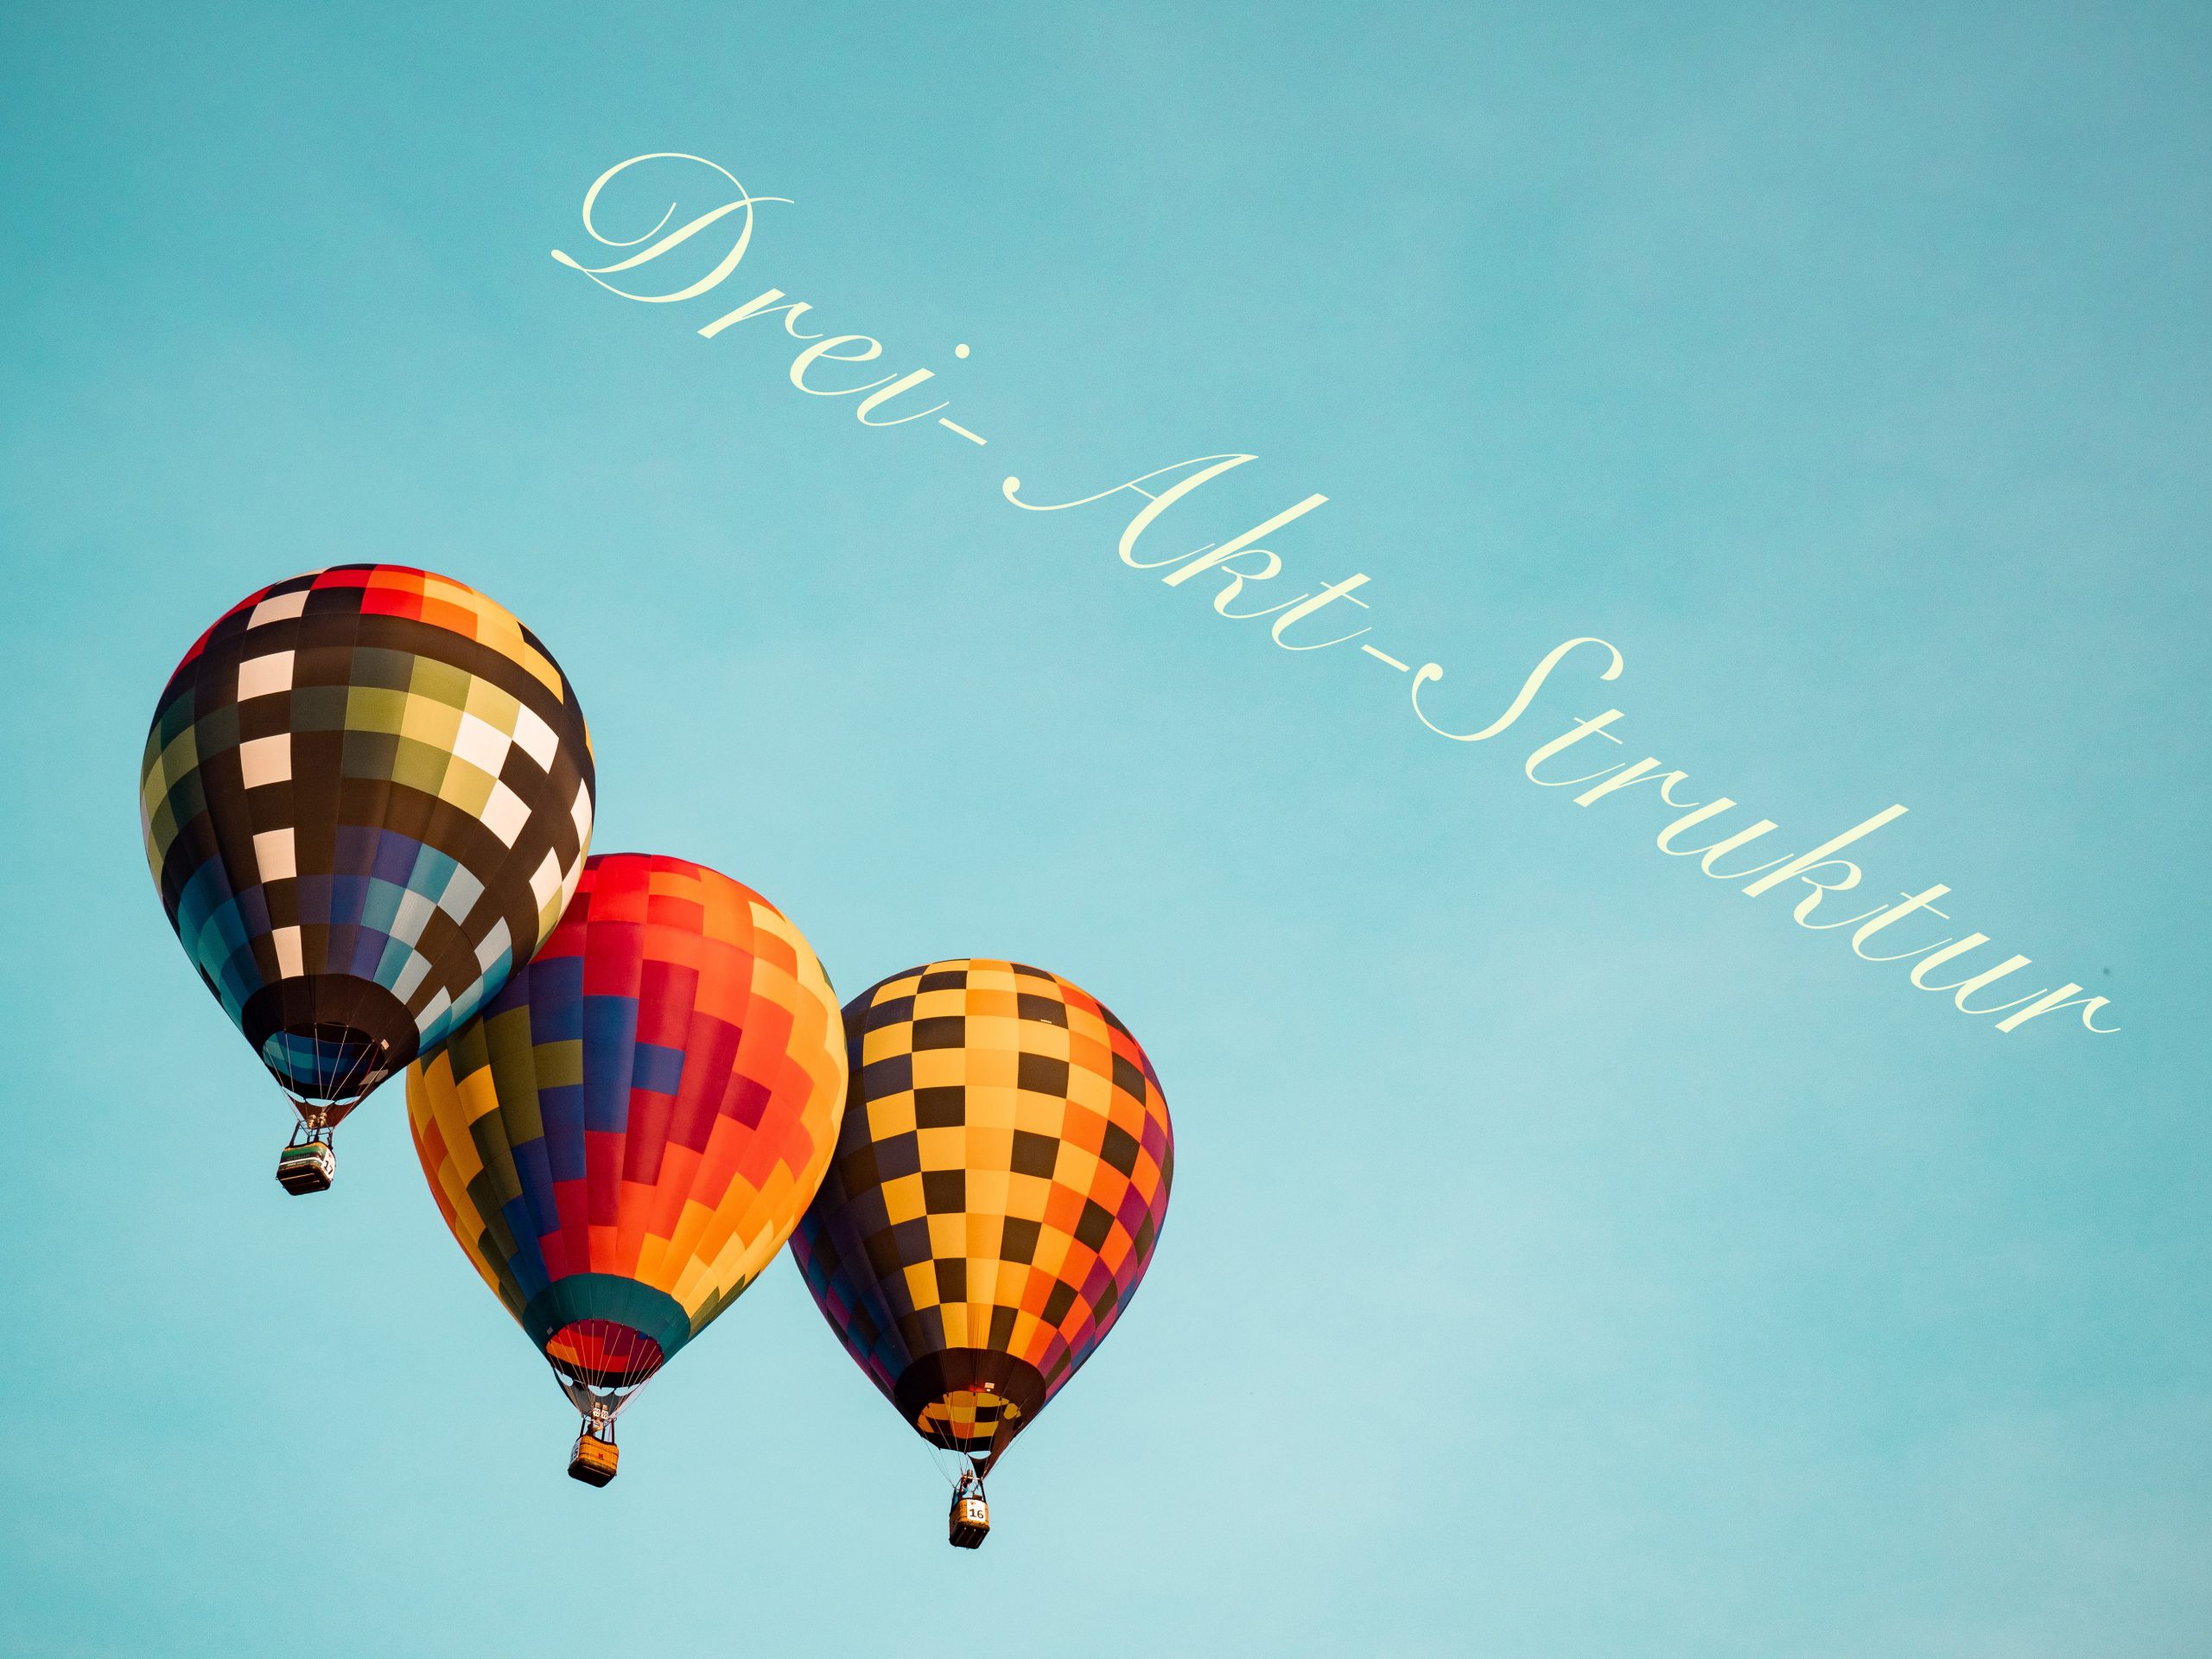 Drei Heißluftballons mit Schrift Drei-Akt-Struktur